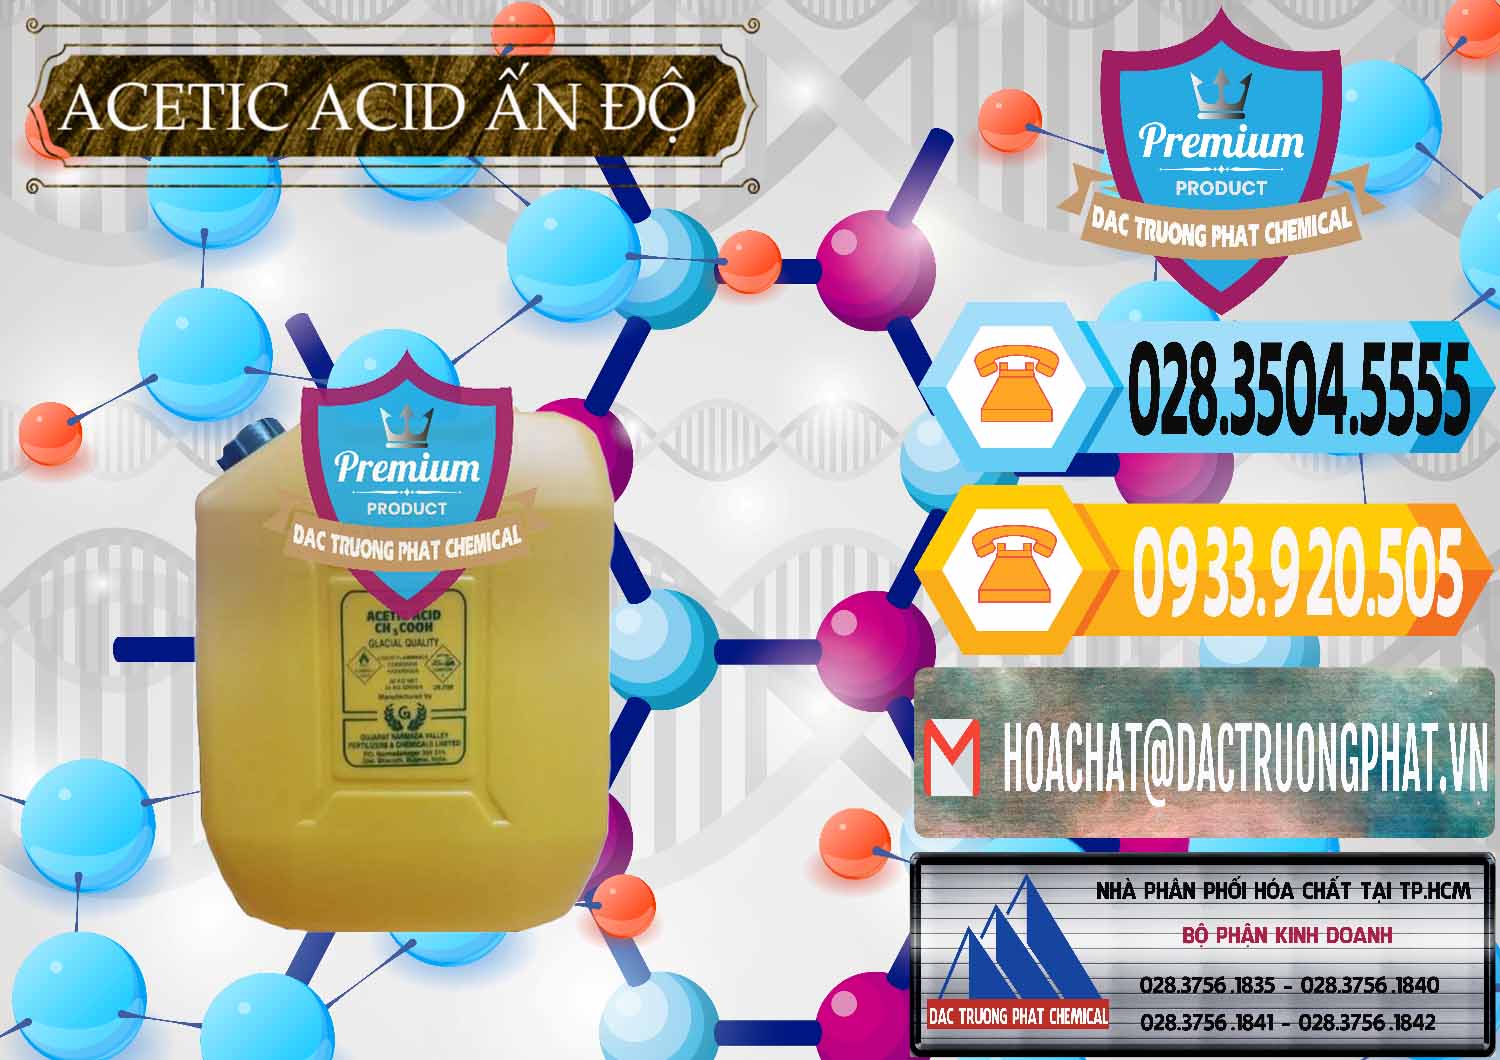 Nơi chuyên bán & cung ứng Acetic Acid – Axit Acetic Ấn Độ India - 0359 - Cty chuyên nhập khẩu và cung cấp hóa chất tại TP.HCM - hoachattayrua.net